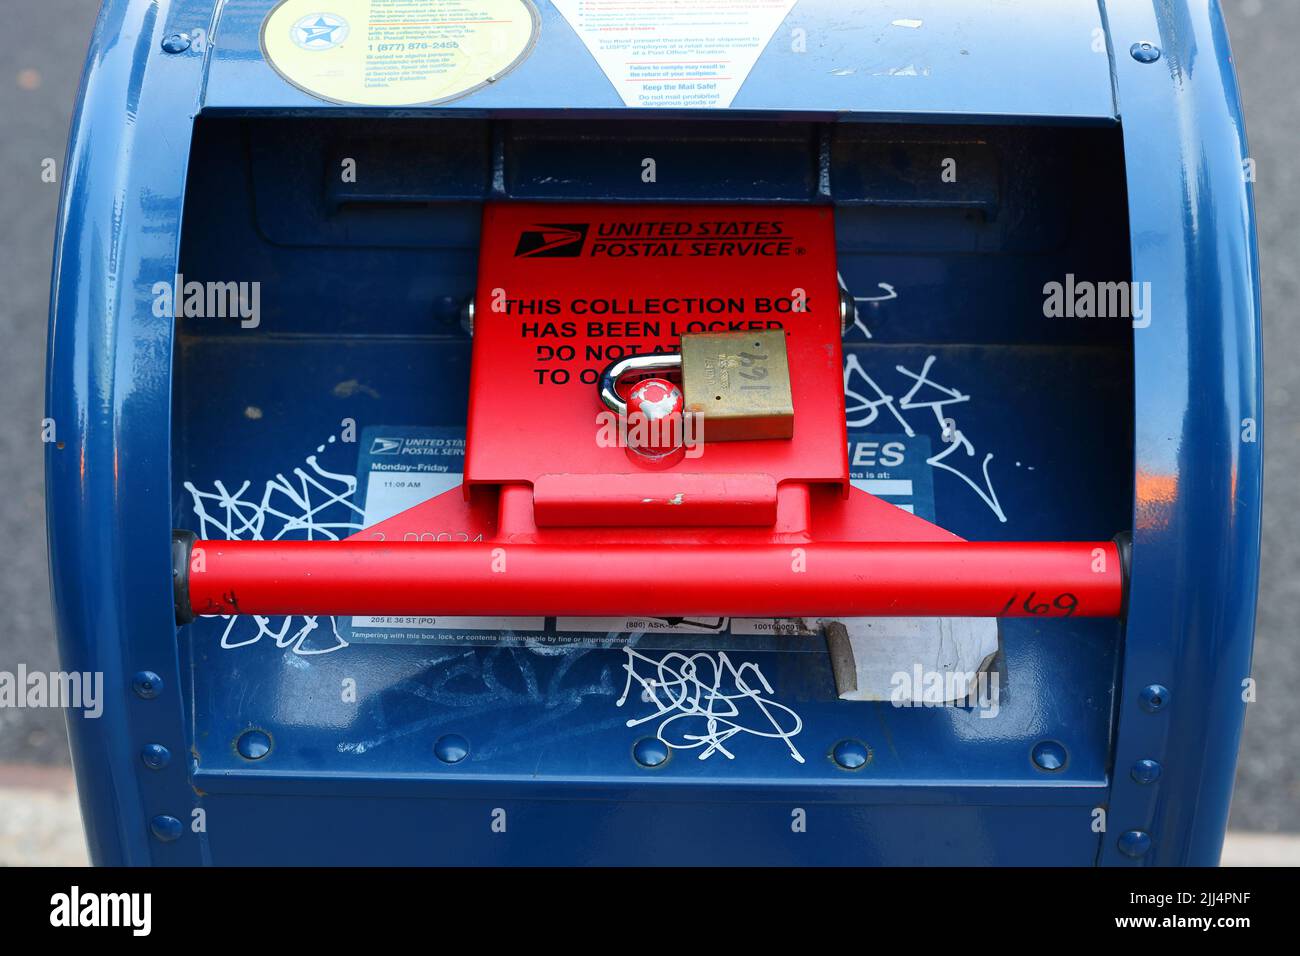 Une boîte aux lettres USPS avec un dispositif de verrouillage de sécurité rouge. Une boîte aux lettres de collecte verrouillée à New York dont le courrier n'est pas collecté à cet emplacement. Banque D'Images